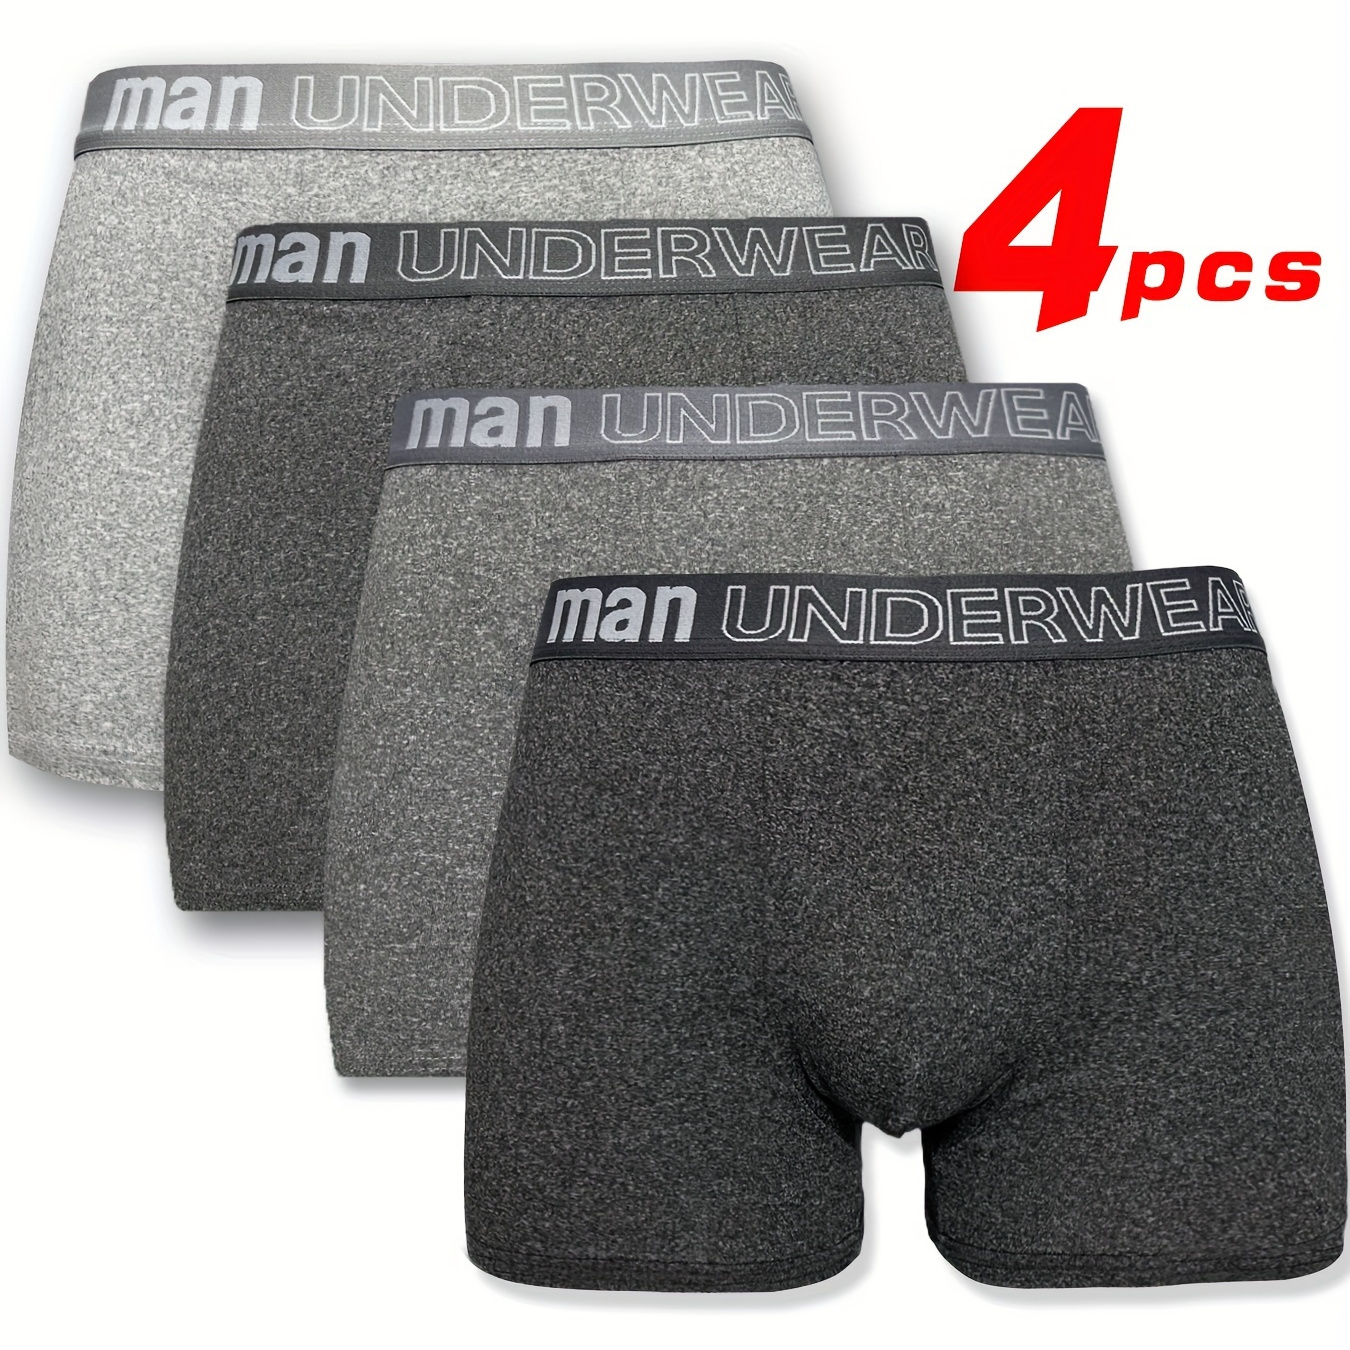 

4pcs Men's Underwear, Breathable Comfy Stretchy Boxer Briefs Shorts, Casual Plain Color Boxer Trunks